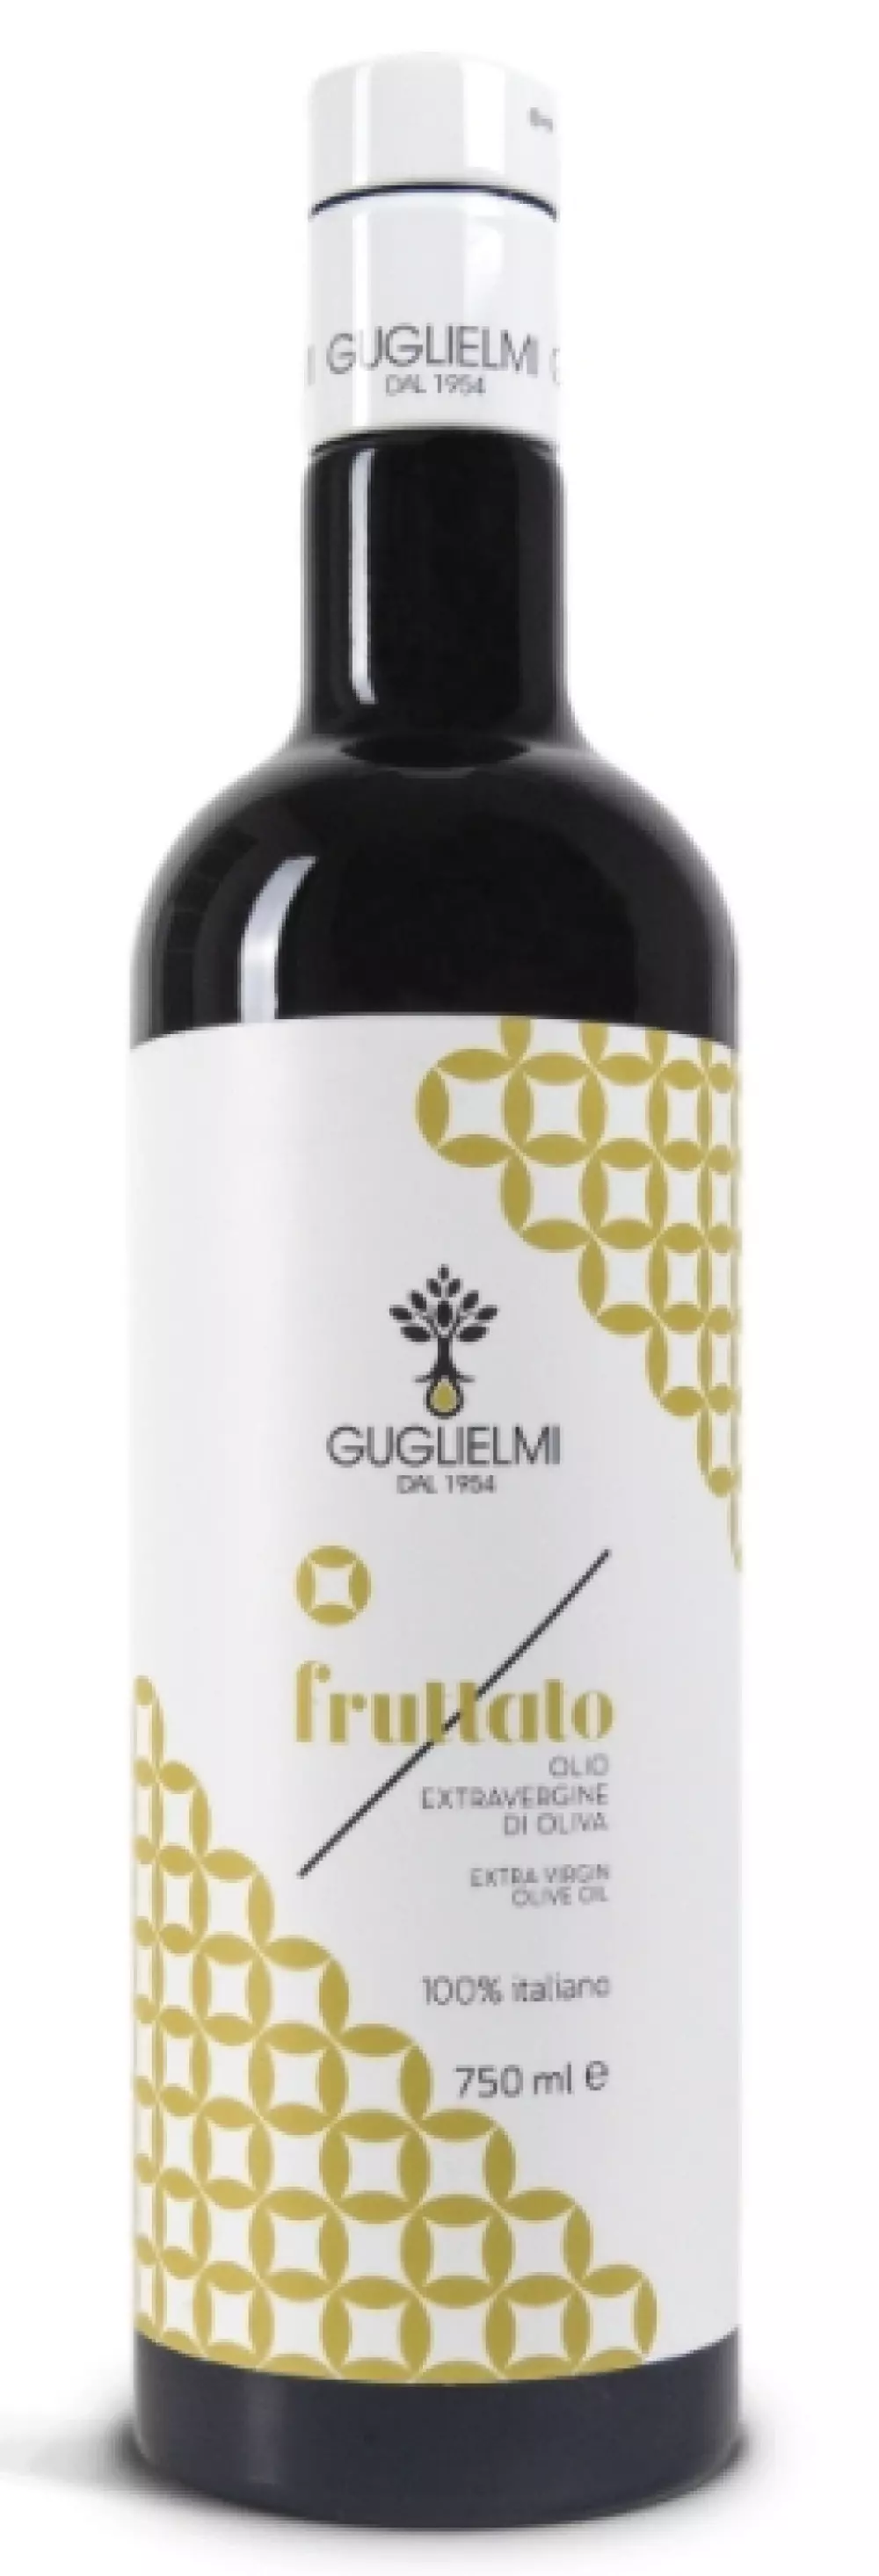 Fruttato 750ml - Guglielmi, 8034041251376, 80749395, Olivenolje, Puglia, Guglielmi, FRU750, 100% ekstrajomfru-olivenolje, fruktig og mild.